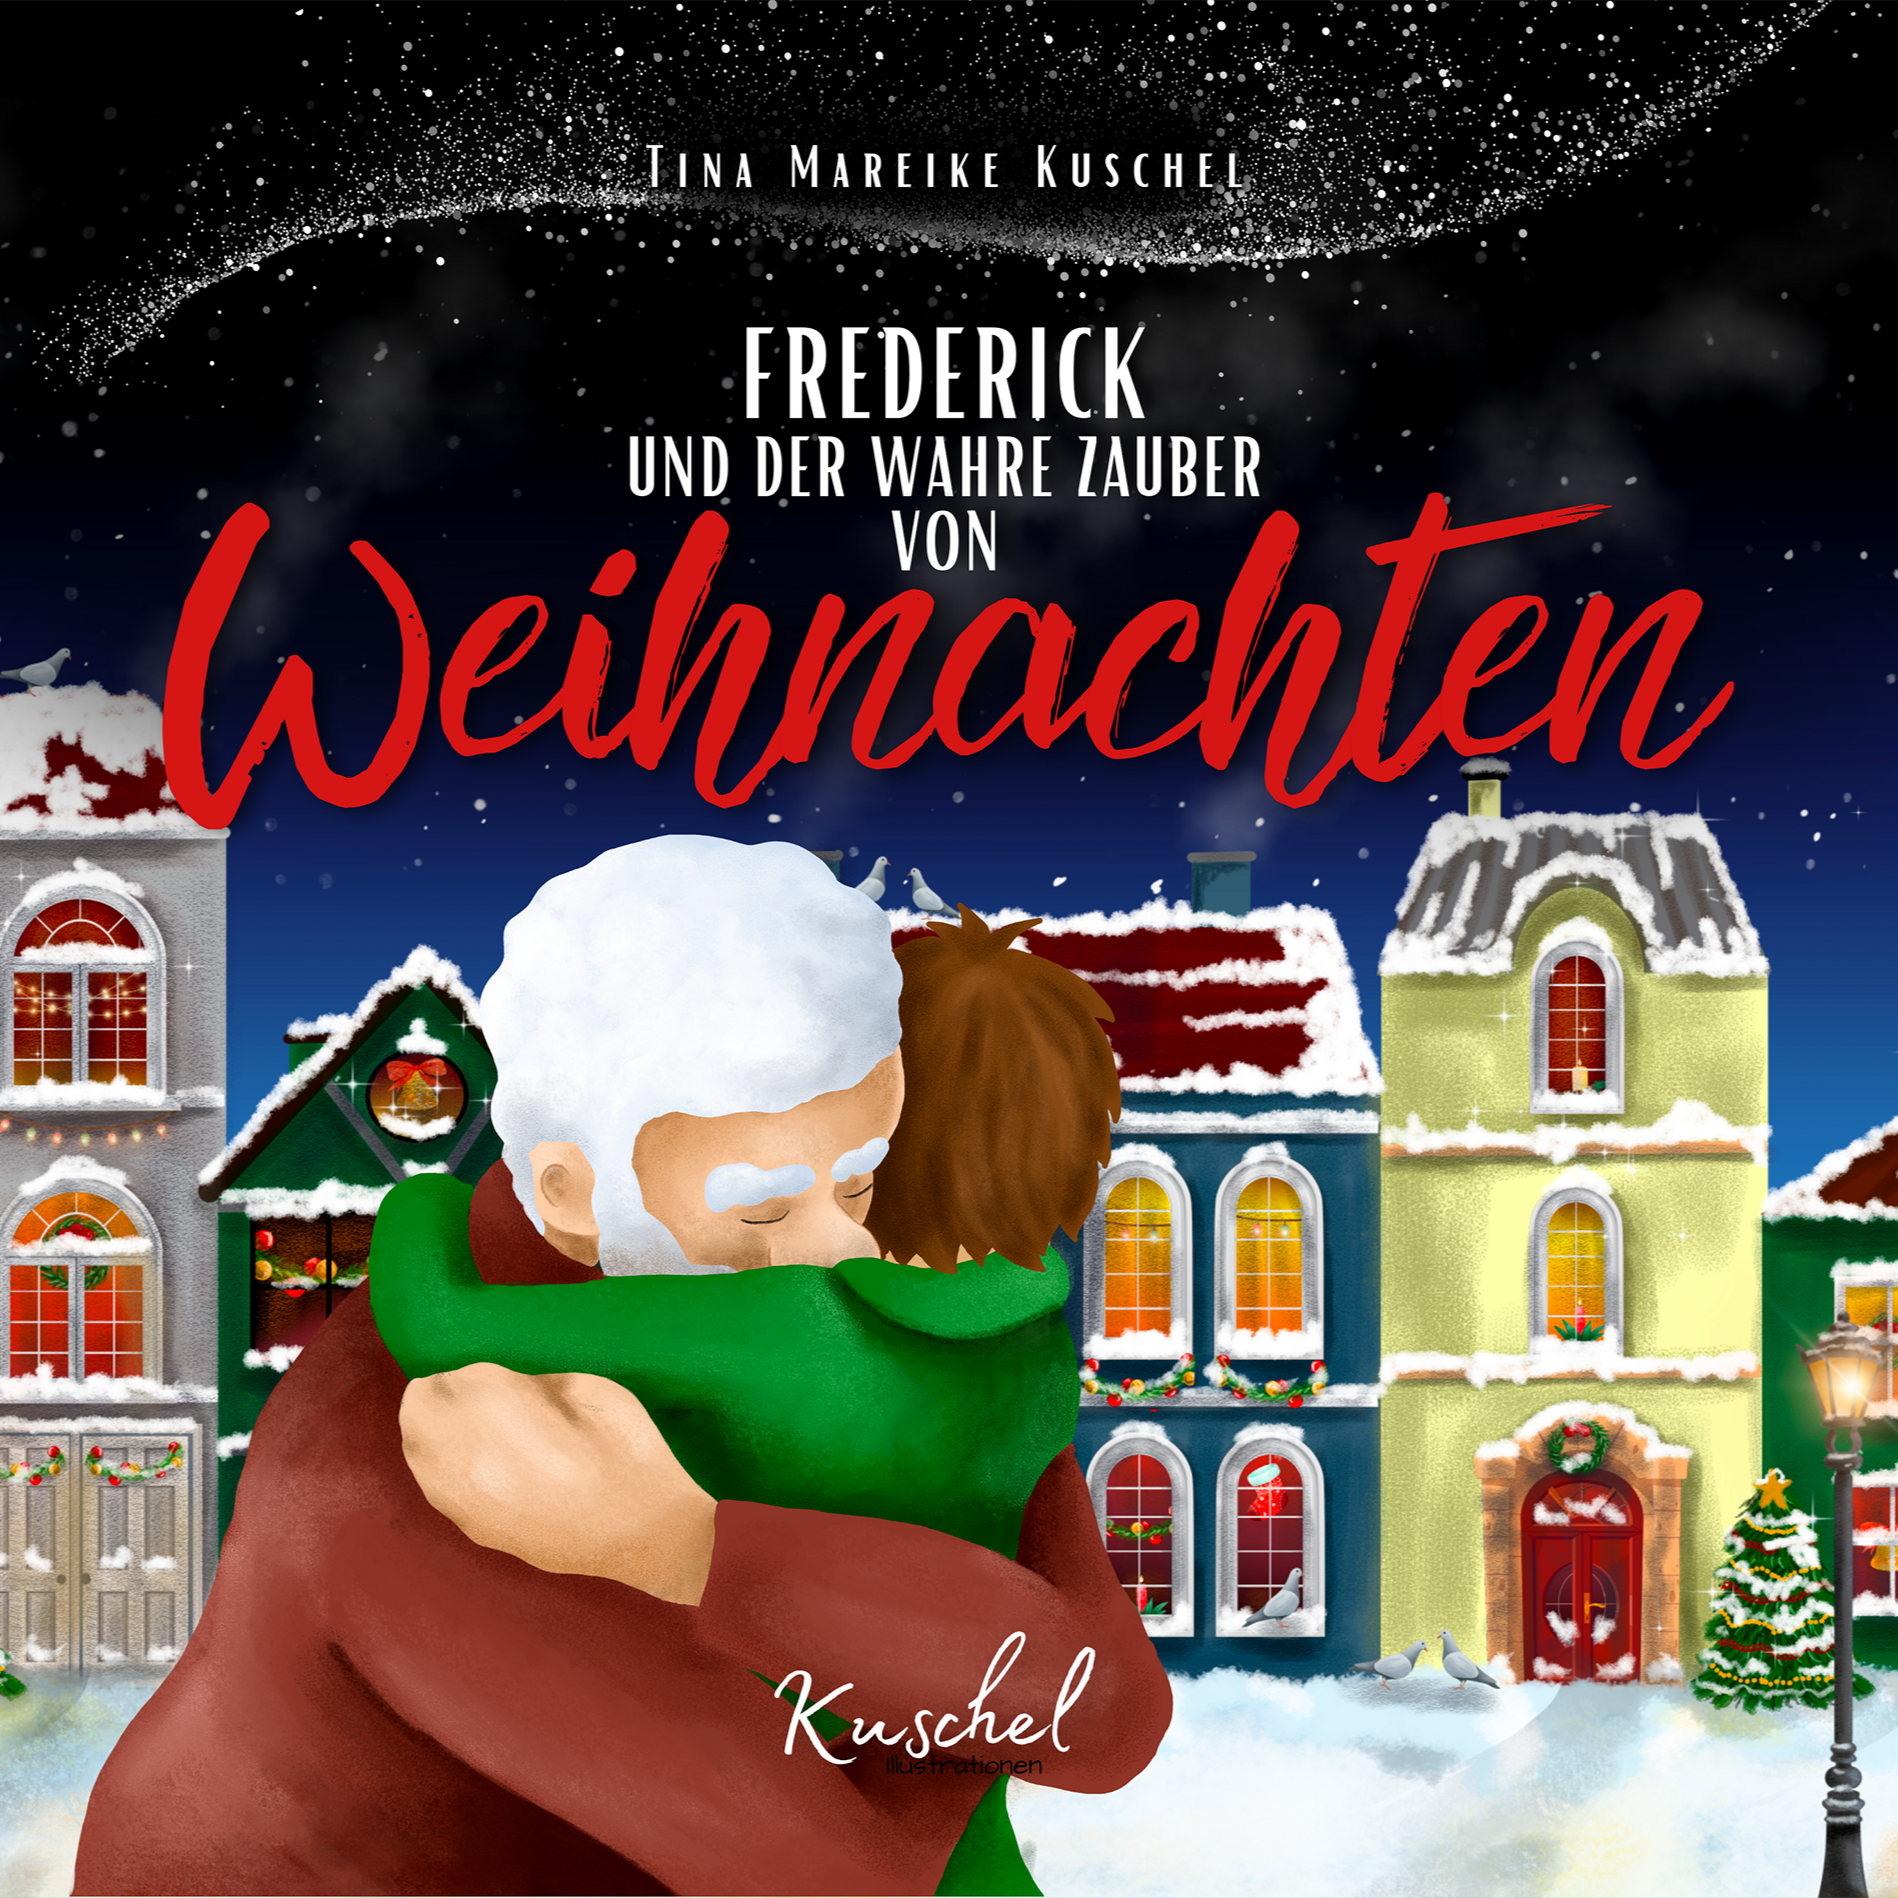 Frederick und der wahre Zauber von Weihnachten - Tina Mareike Kuschel